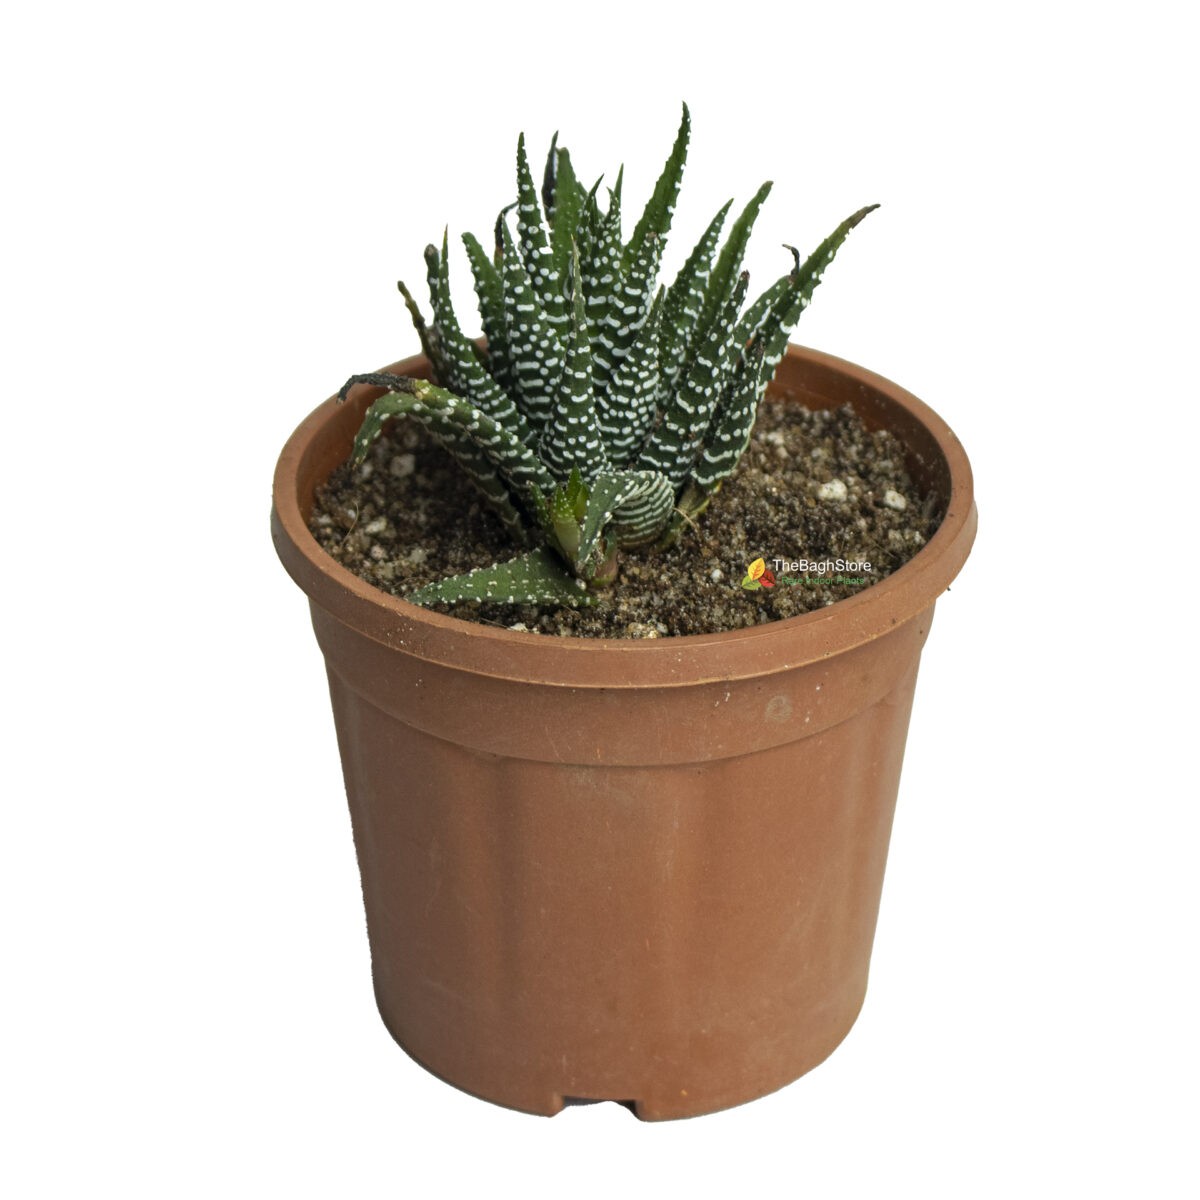 Zebra Cactus, Haworthia reinwardtii, Zebra Wart - Succulent Plant